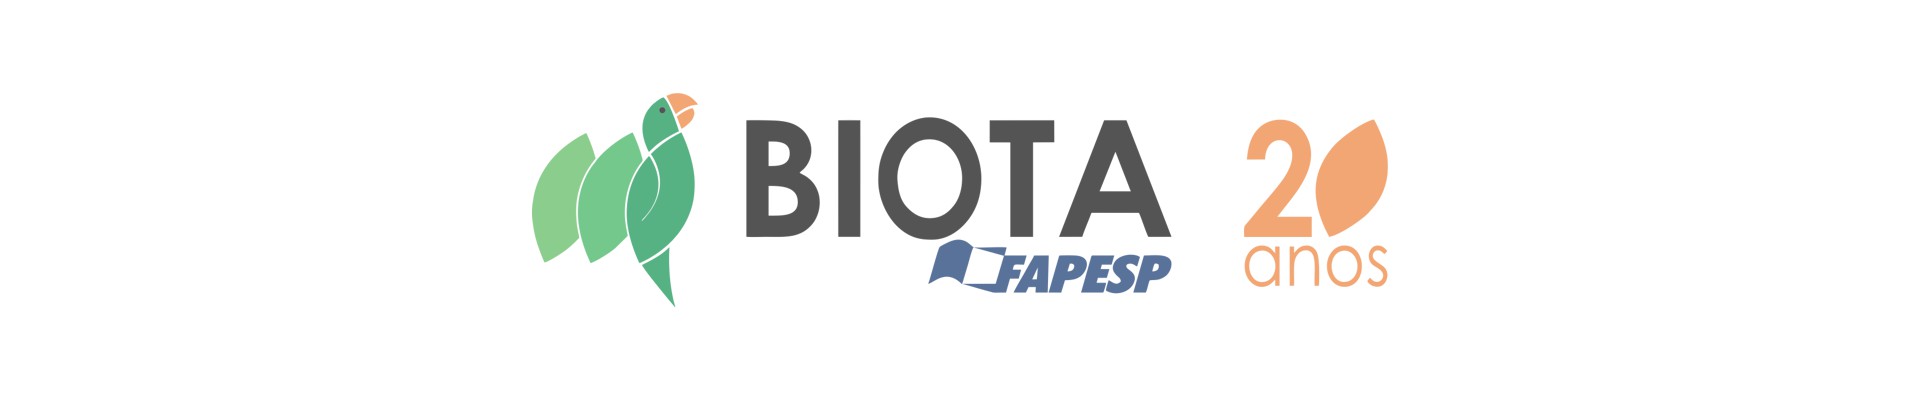 Logotipo Biota / FAPESP 20 anos